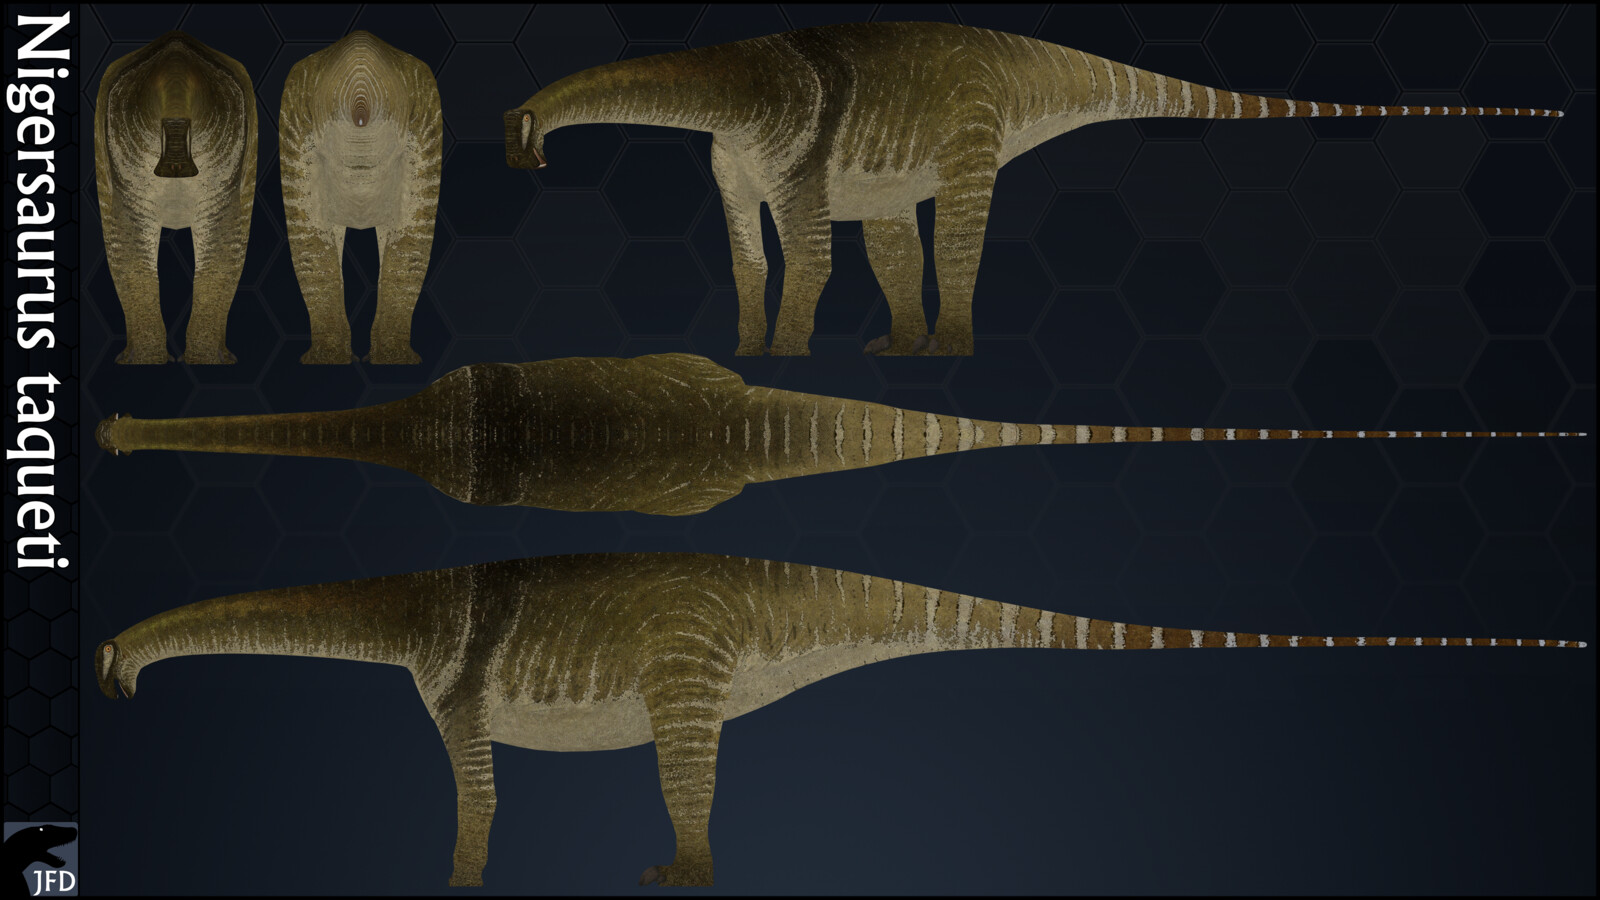 Nigersaurus taqueti orthographic multi-view render.